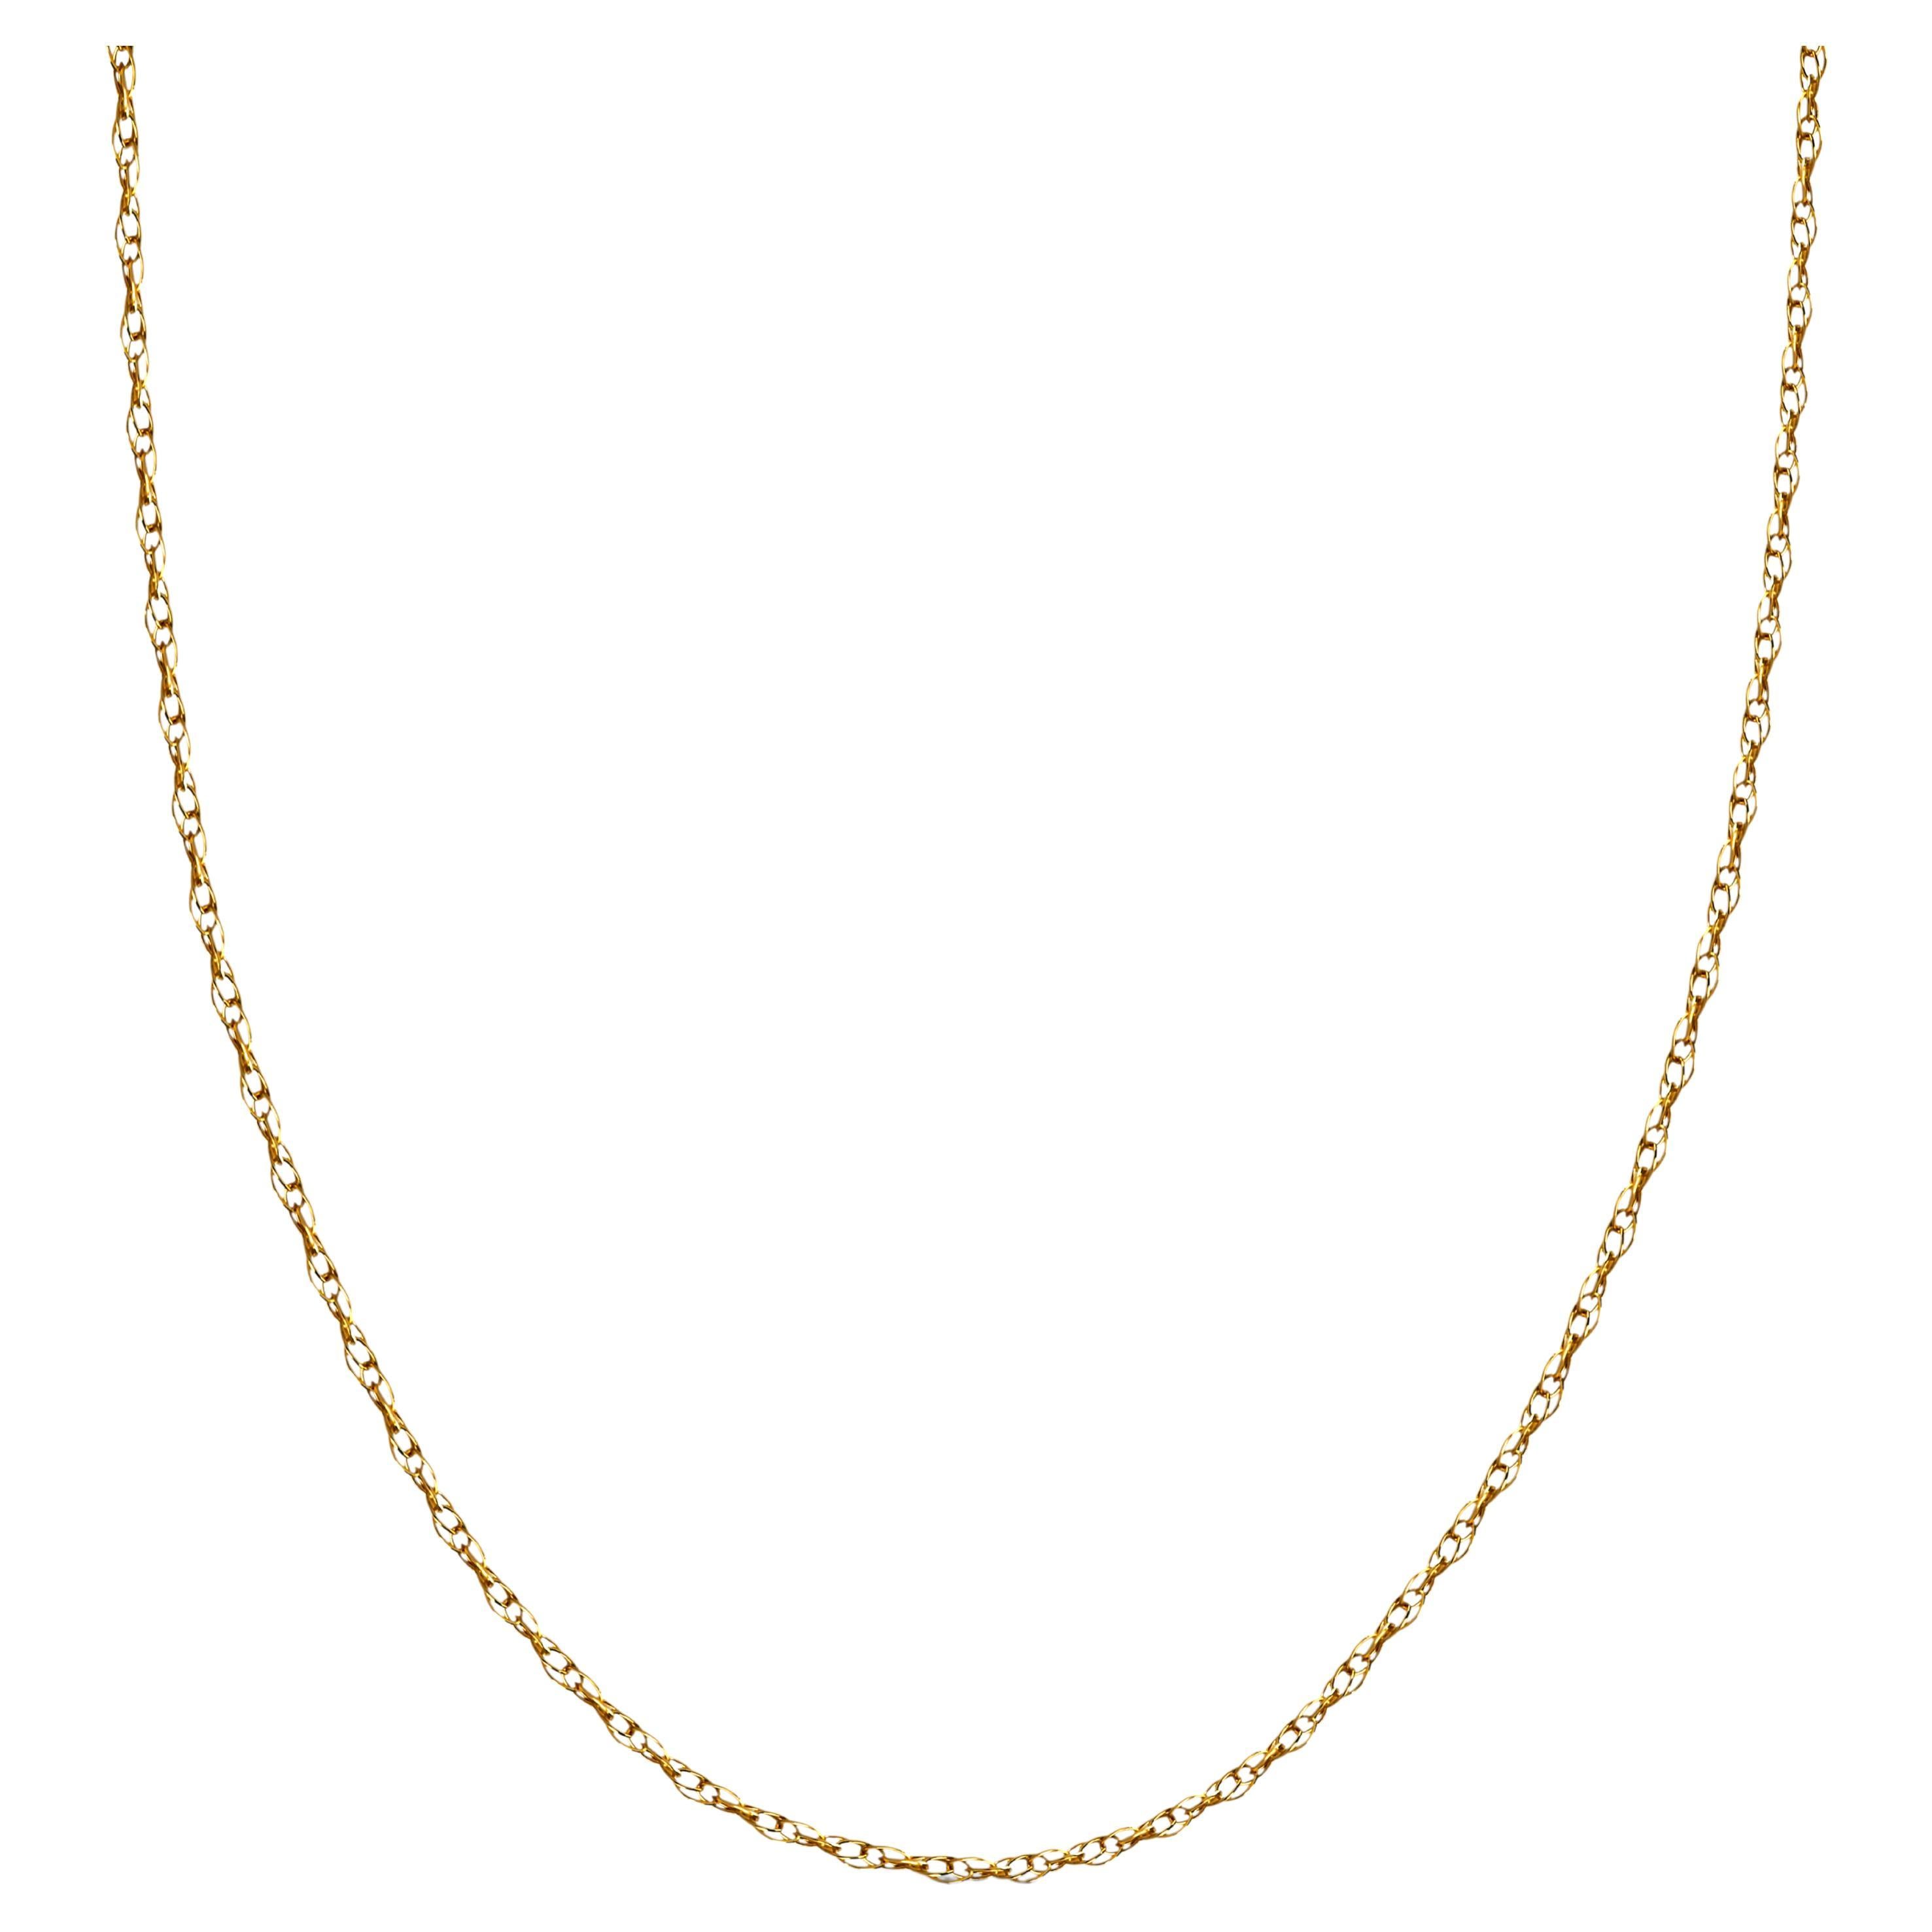 Collier en or jaune 14k avec chaîne en forme de corde, pendentif femme en forme de diamant. 